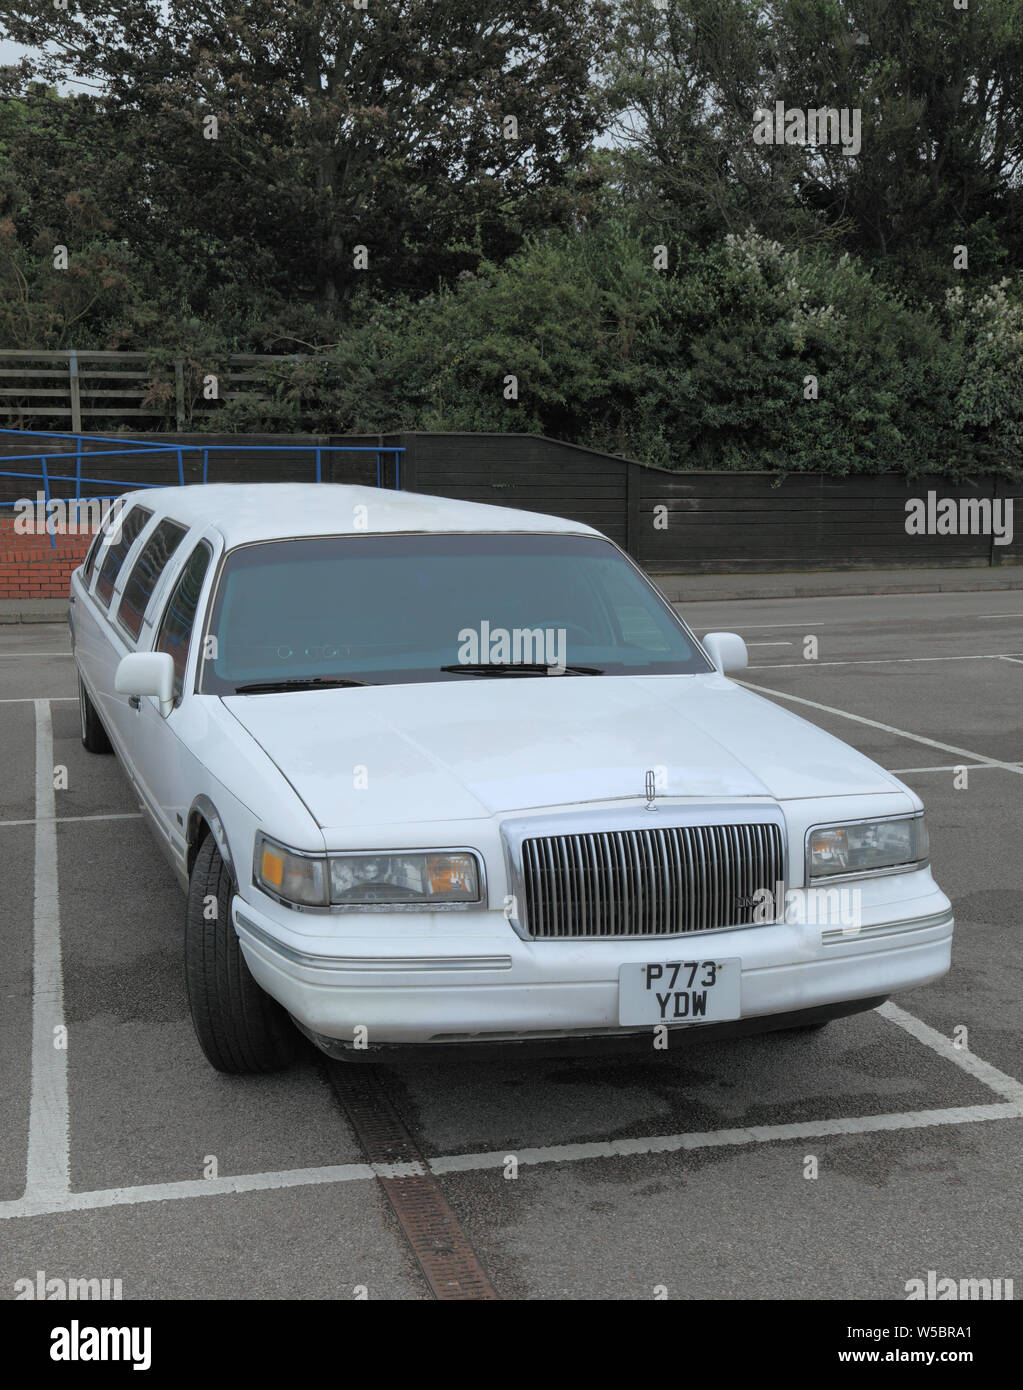 Limousine, location de limousine, Lincoln fabrication, location, véhicule, 2 baies, baies de stationnement Banque D'Images